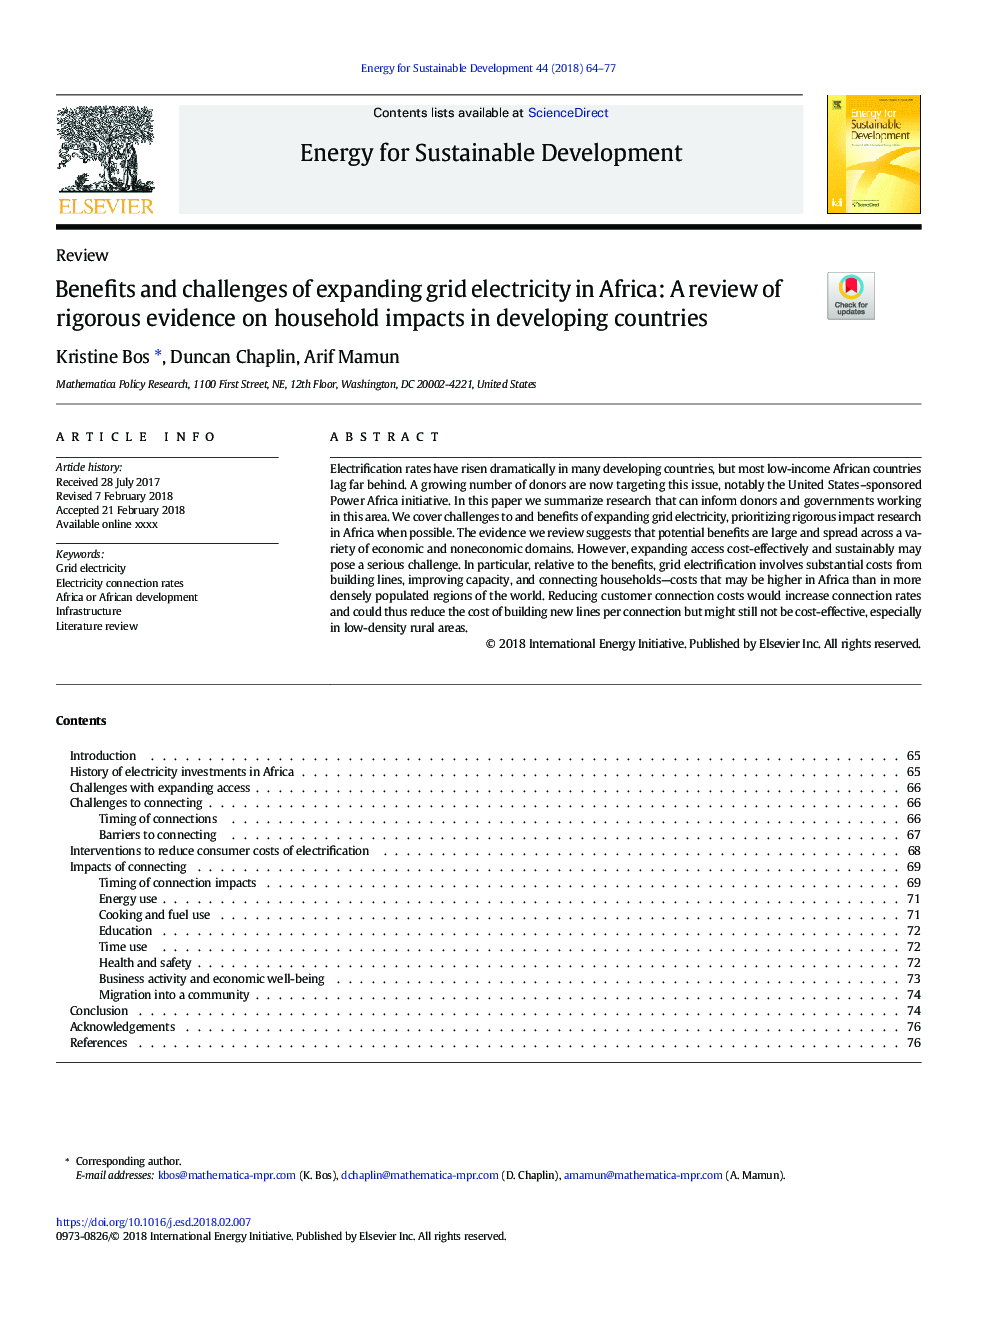 مزایا و چالش های گسترش برق شبکه در آفریقا: بررسی شواهد دقیق در مورد تاثیرات خانوار در کشورهای در حال توسعه 